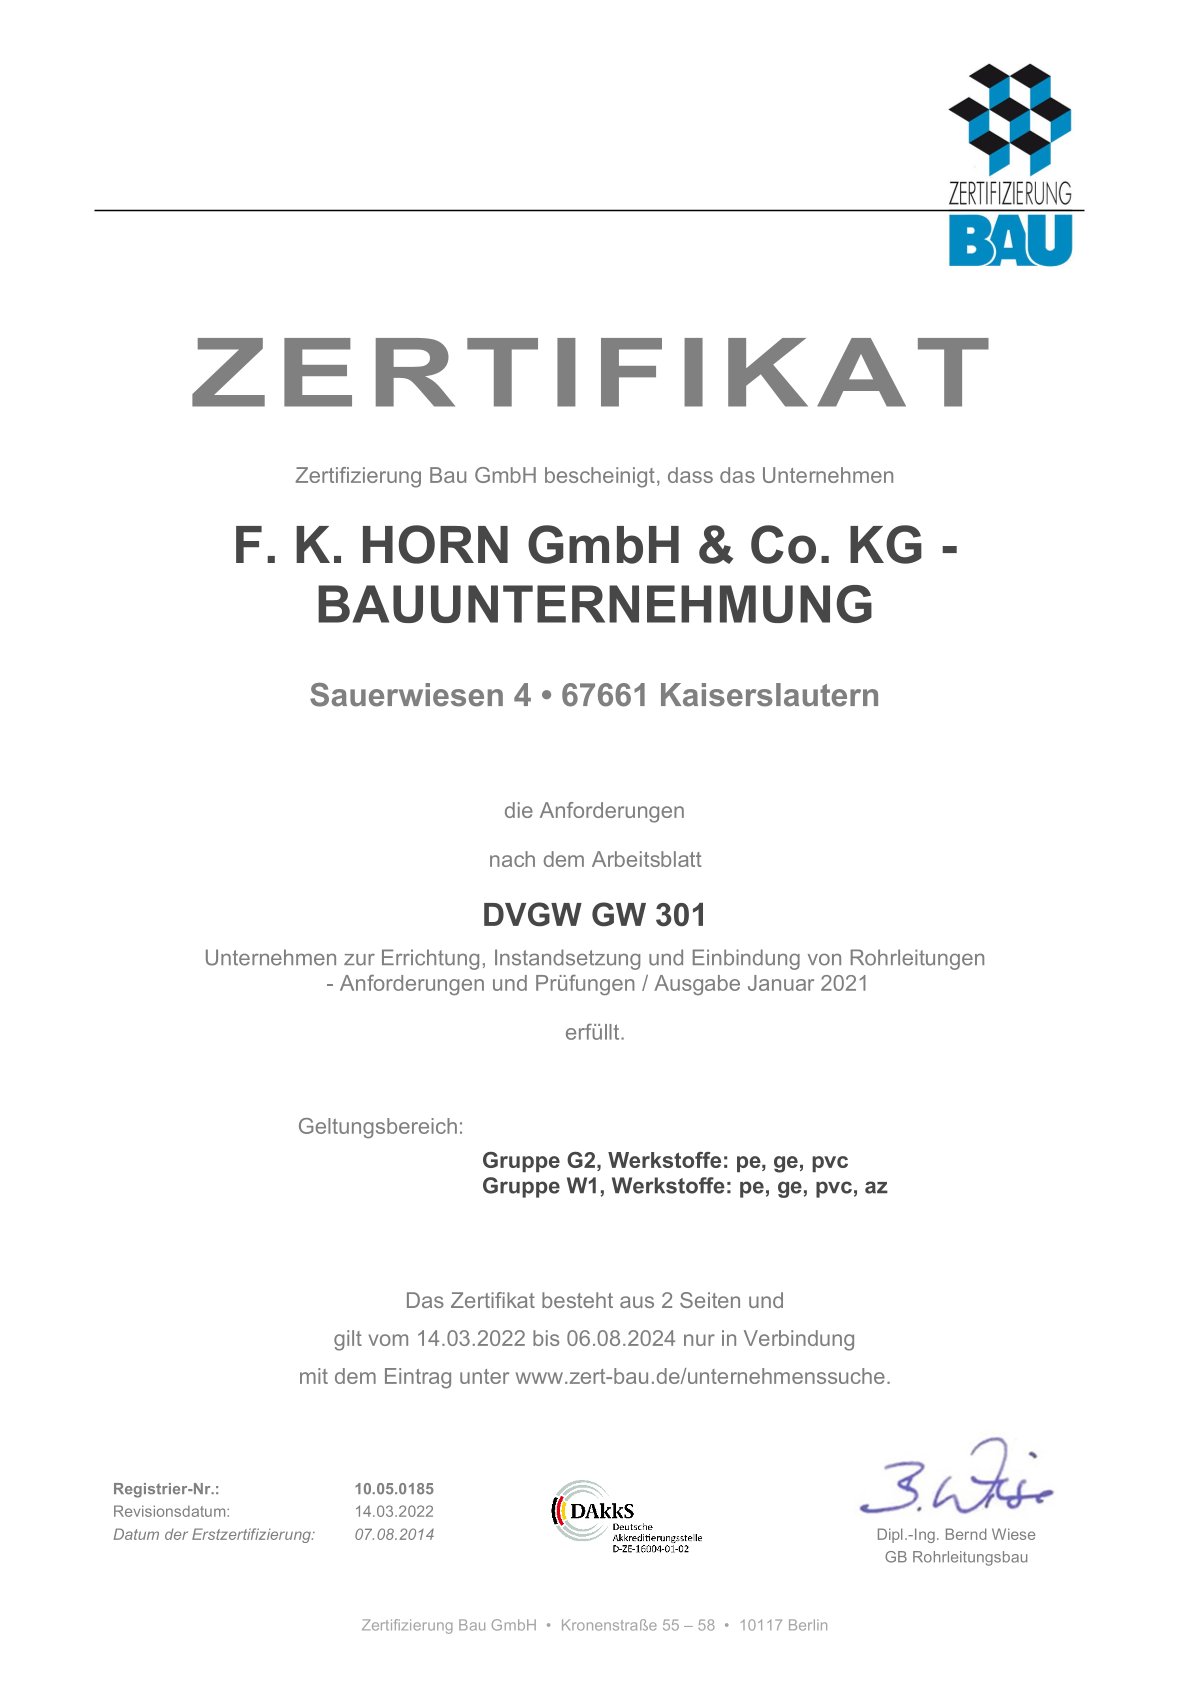 Abbildung: Zertifikat DVGW-Fachunternehmen (Gas- und Wasserrohrleitungsbau)